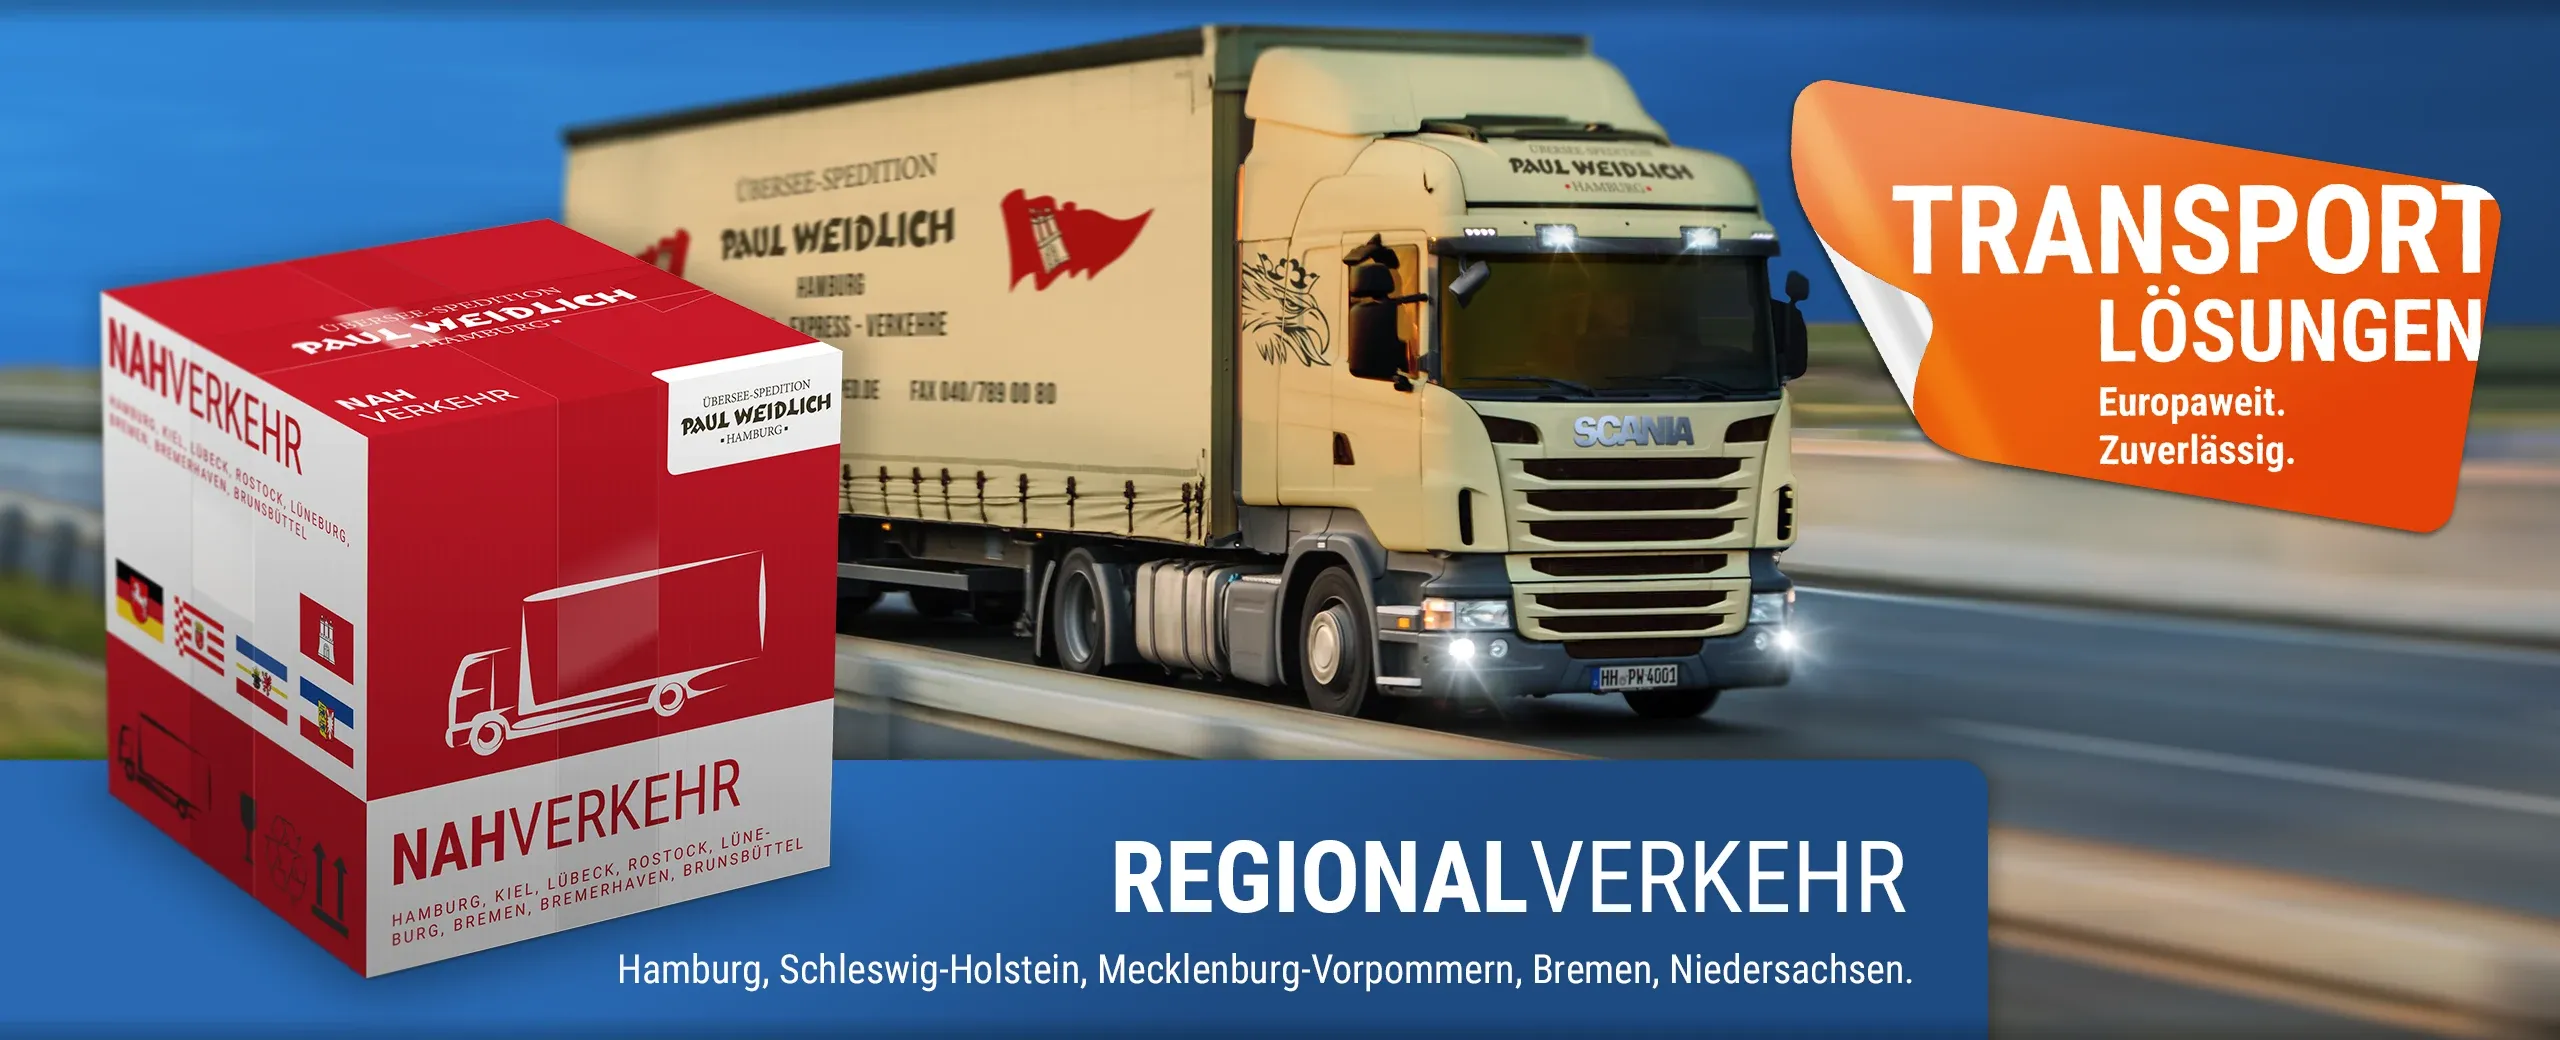 Übersee-Spedition Paul Weidlich GmbH - Hamburg - Regional- und Nahverkehr